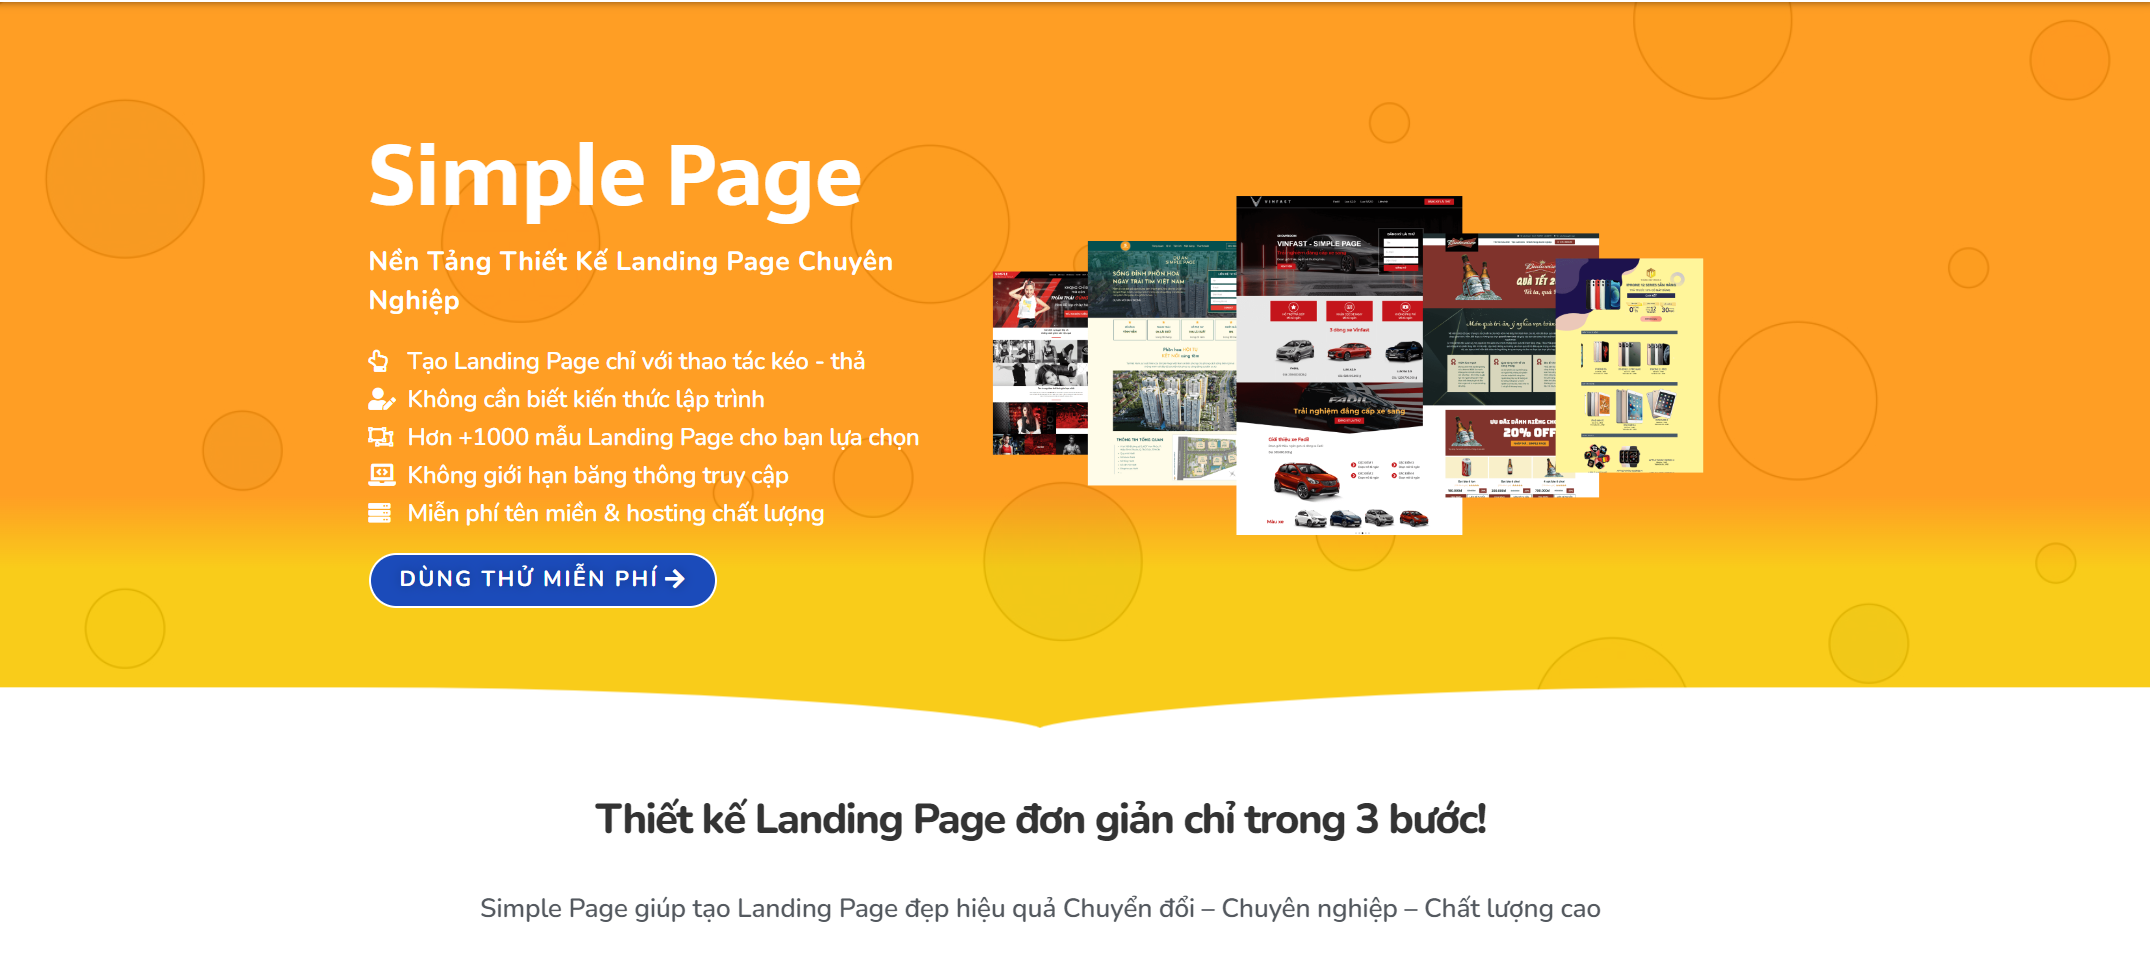 nền tảng thiết kế landing page giá rẻ